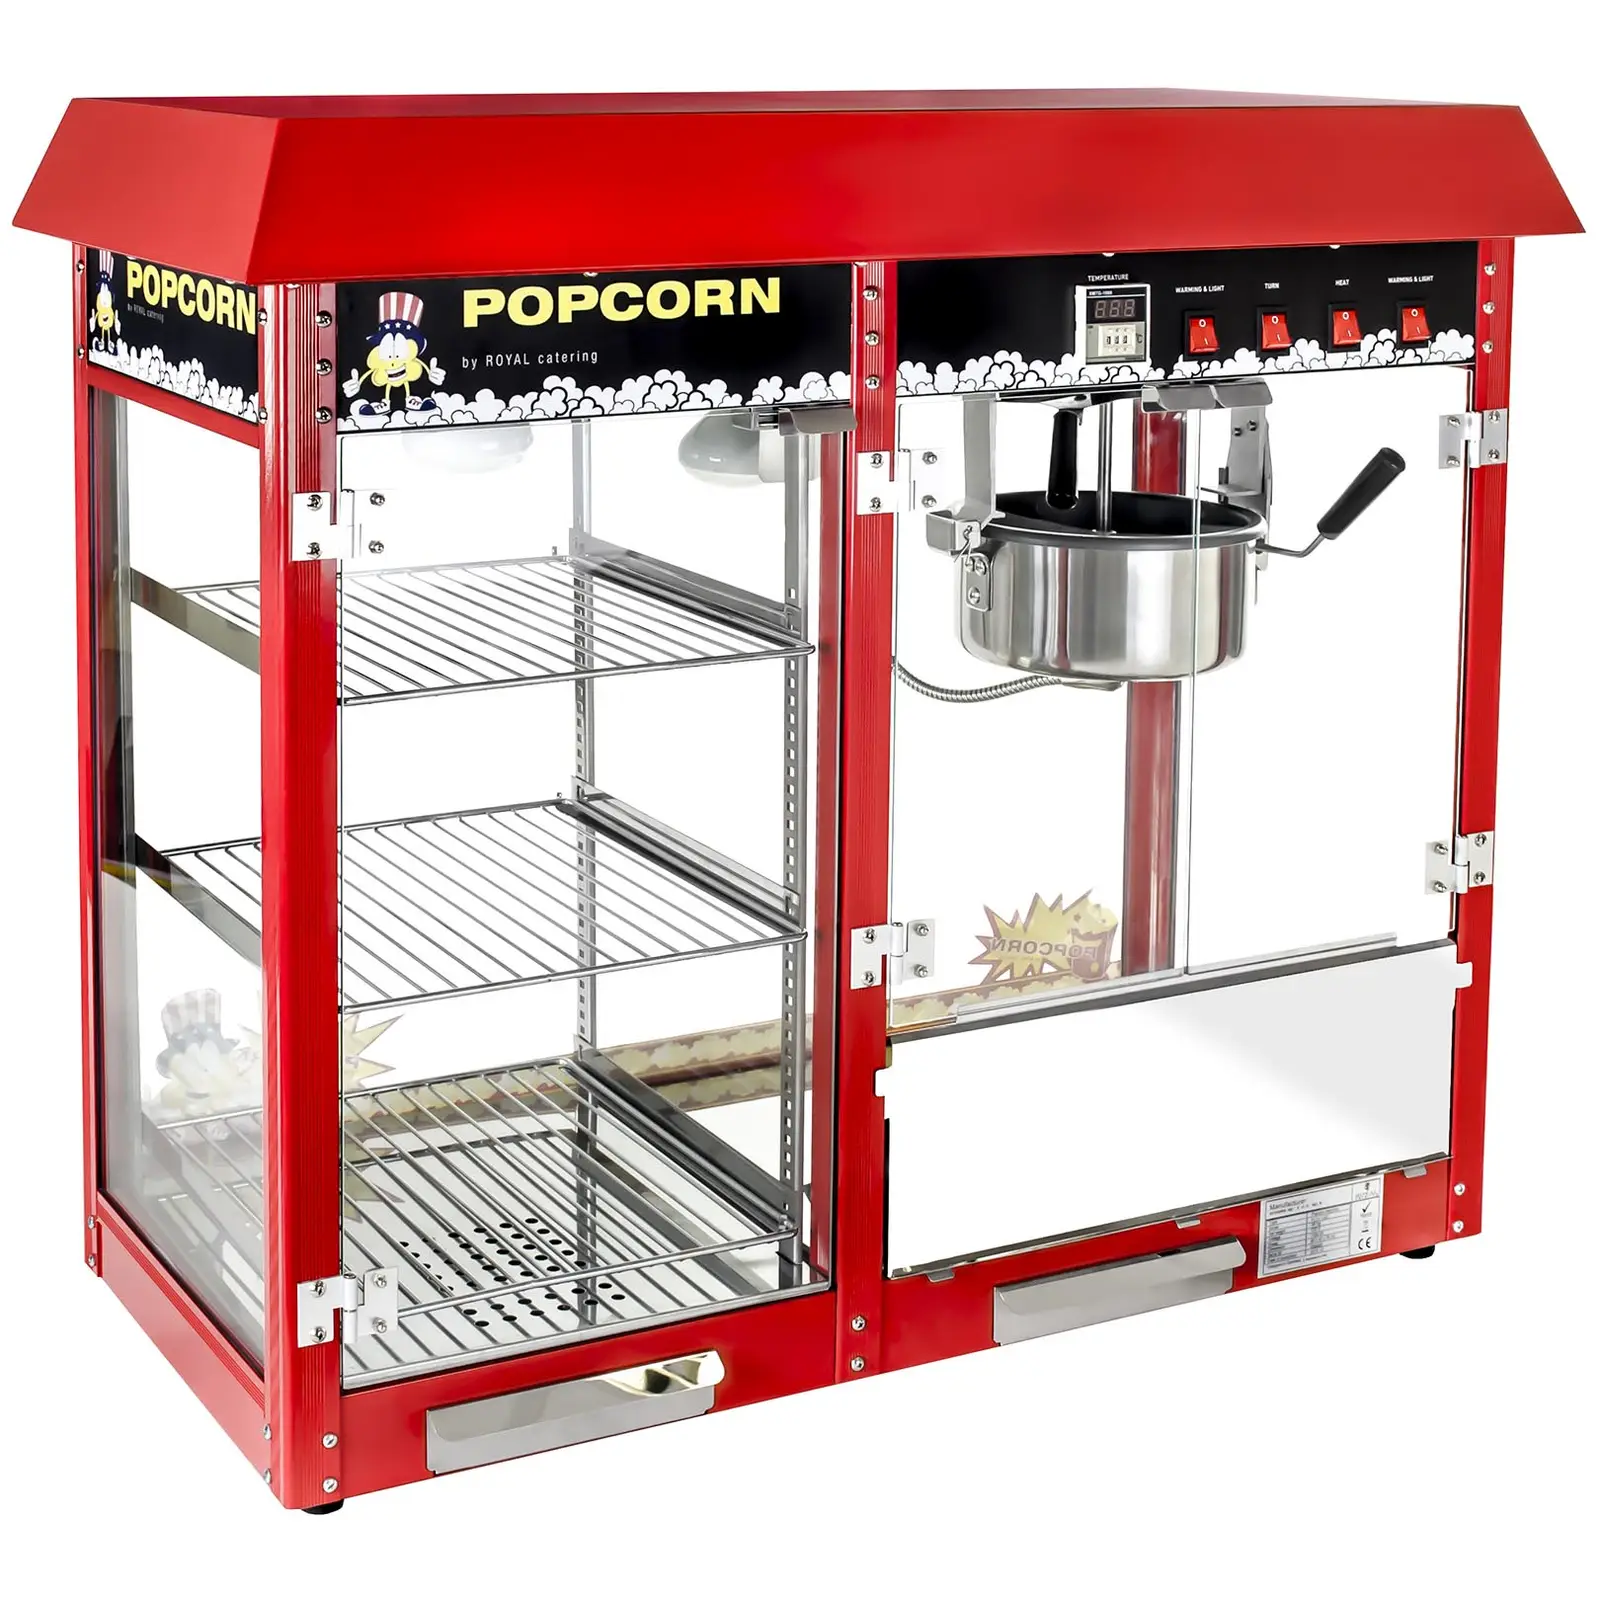 Pop-corn készítő gép - fűtött tároló - piros